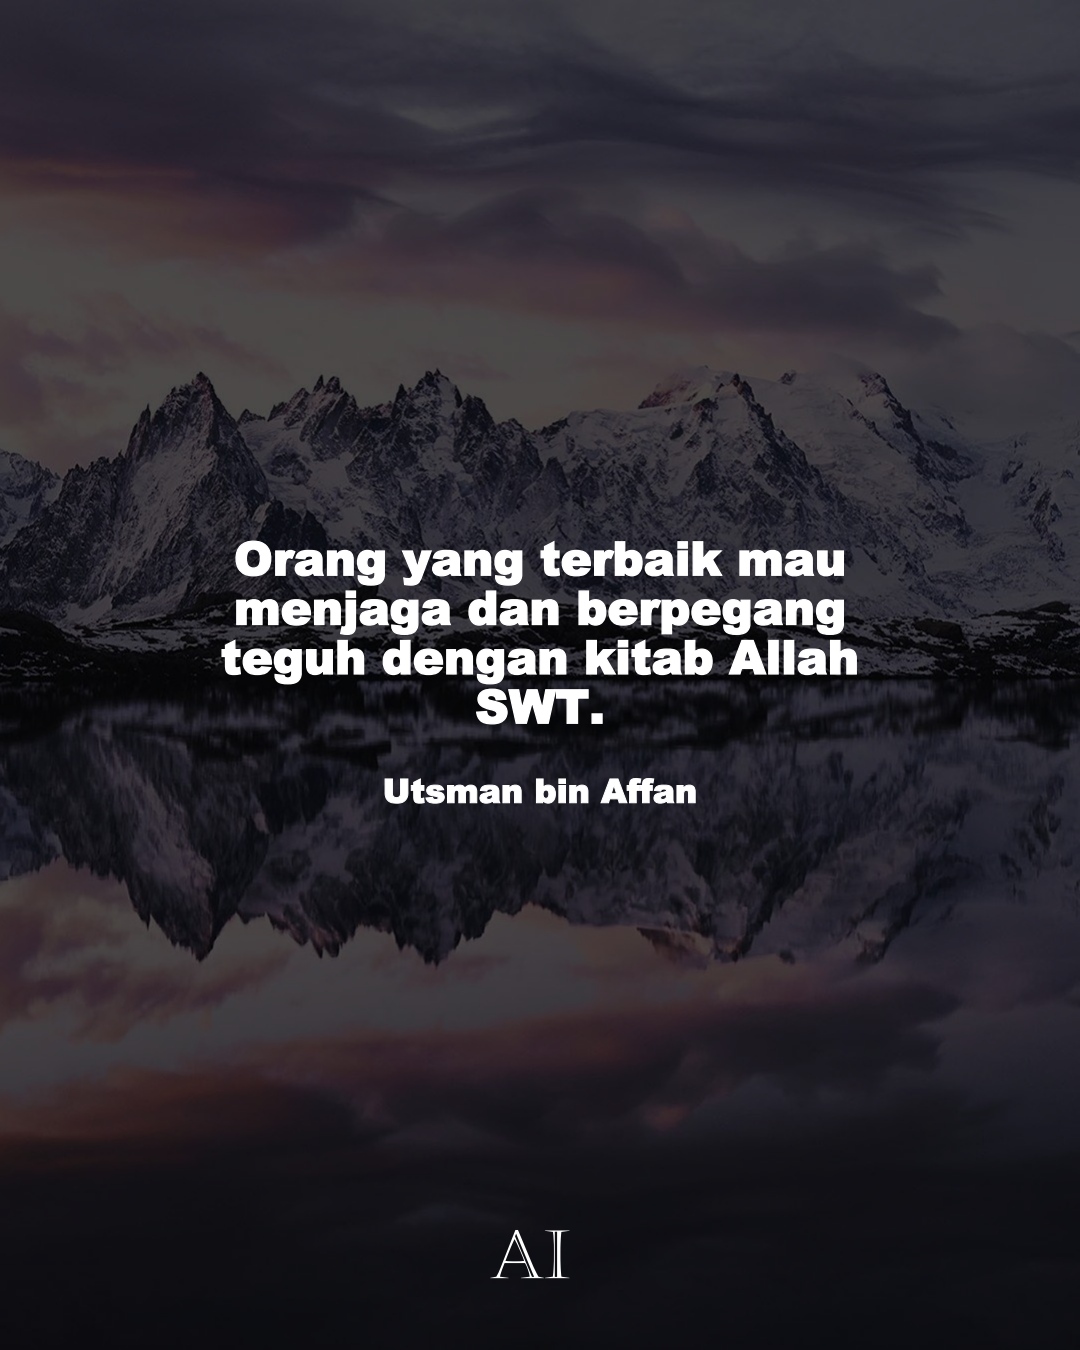 Wallpaper Kata Bijak Utsman bin Affan  (Orang yang terbaik mau menjaga dan berpegang teguh dengan kitab Allah SWT.)